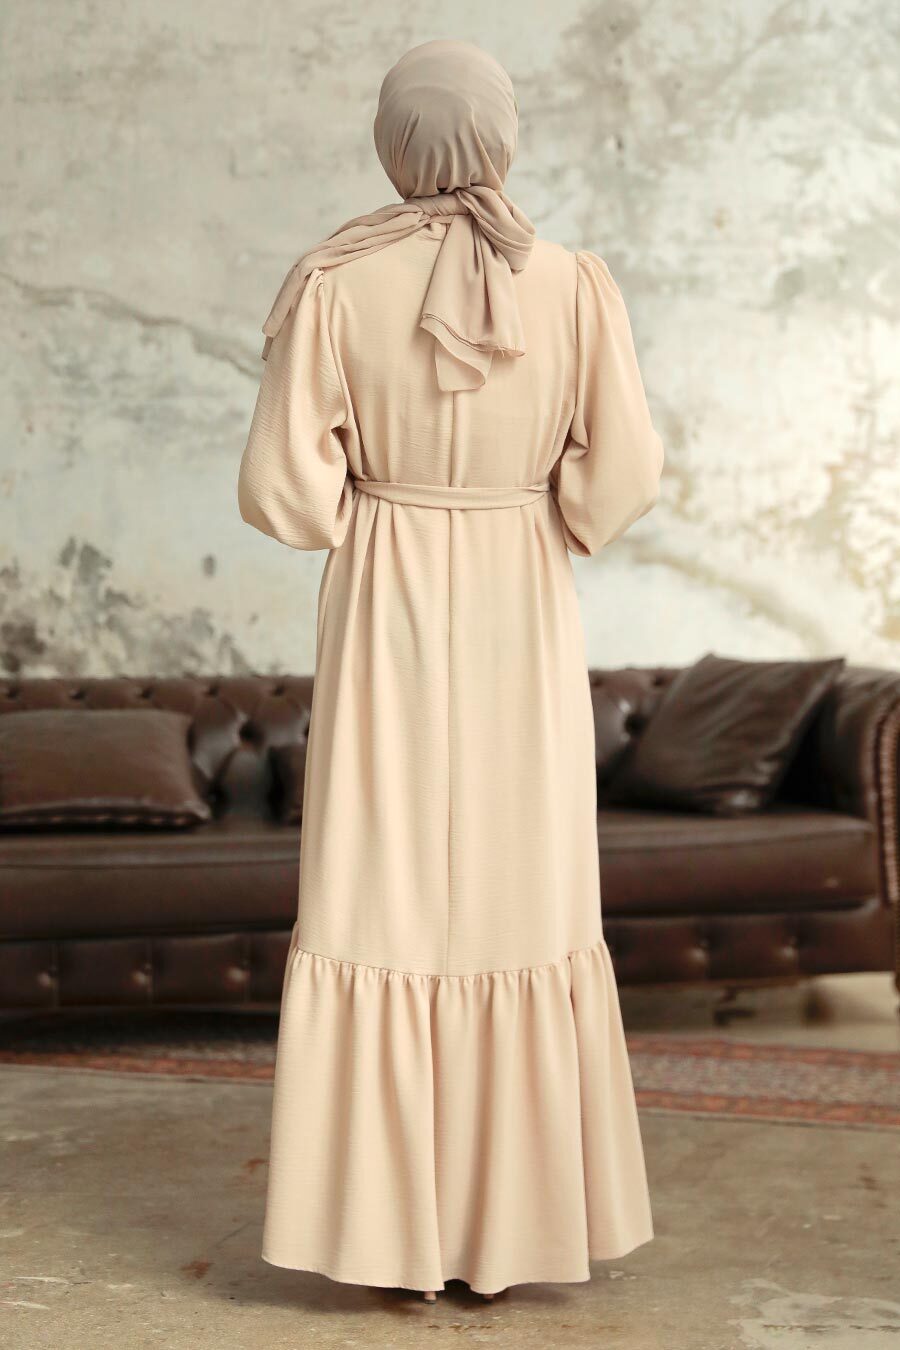 Neva Style - Etek Ucu Volanlı Krem Tesettür Elbise 5972KR